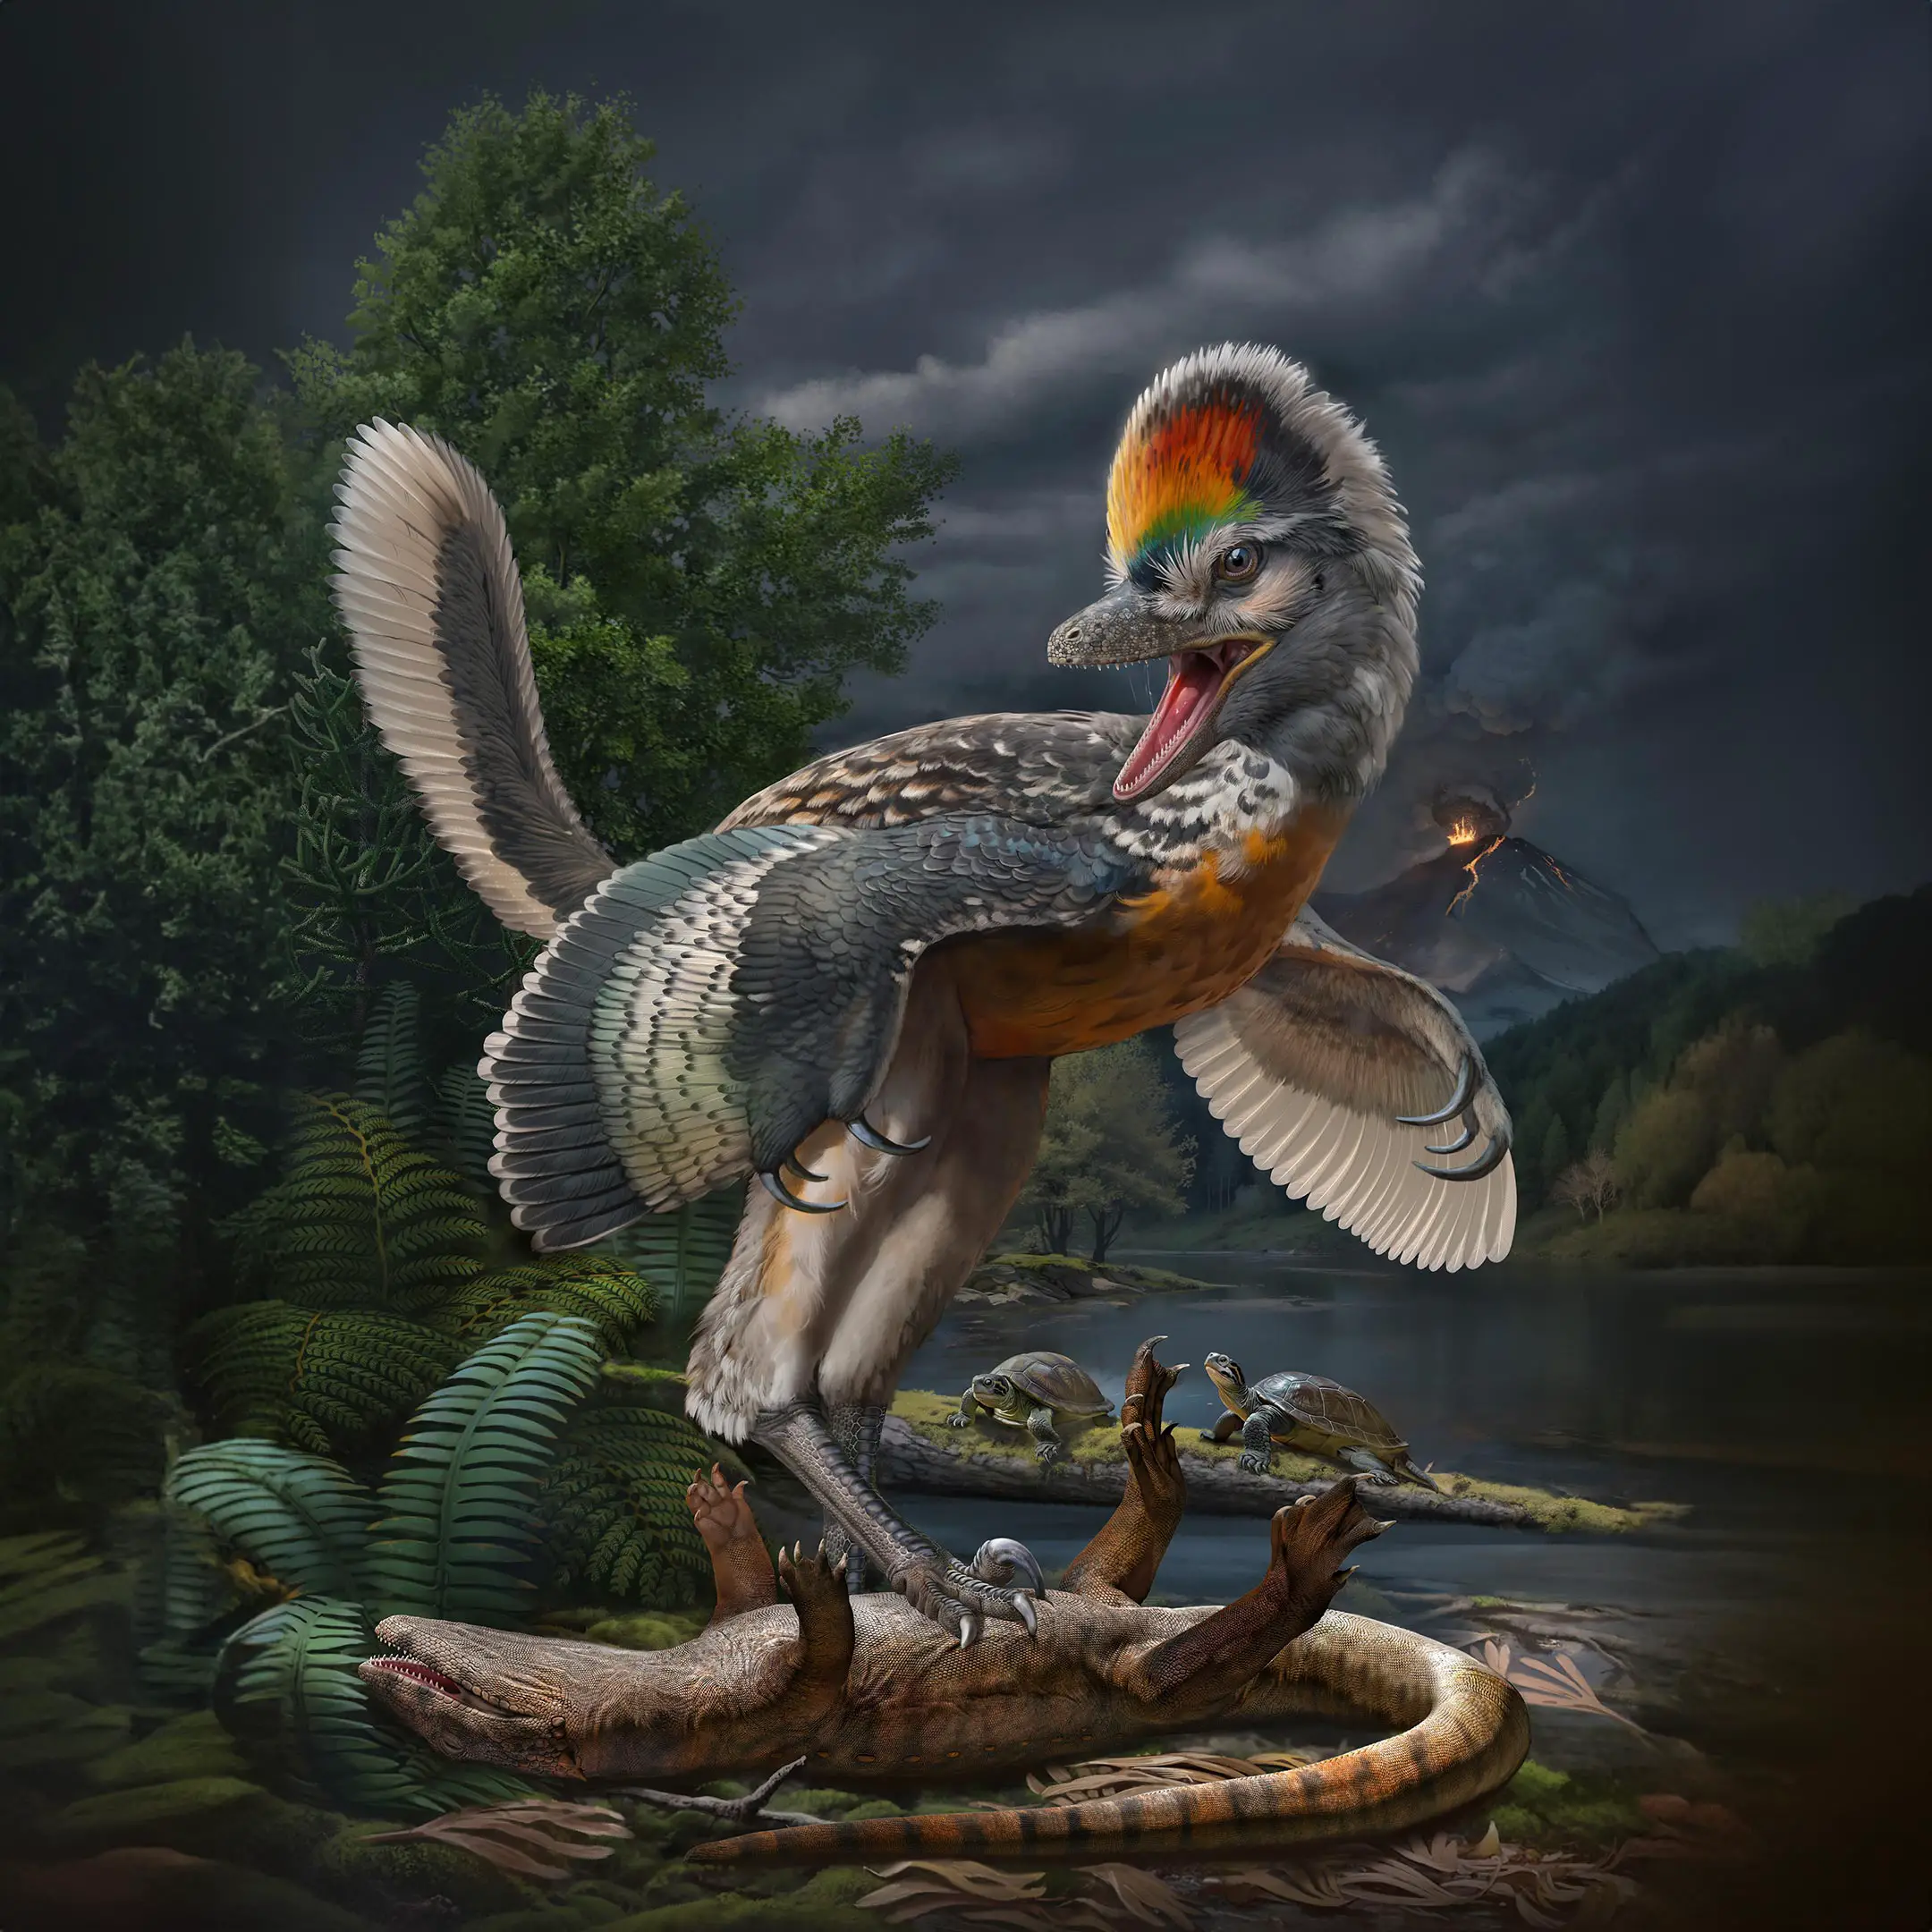 Paleontologen hebben een vreemde nieuwe soort vogelachtige dinosaurus ontdekt